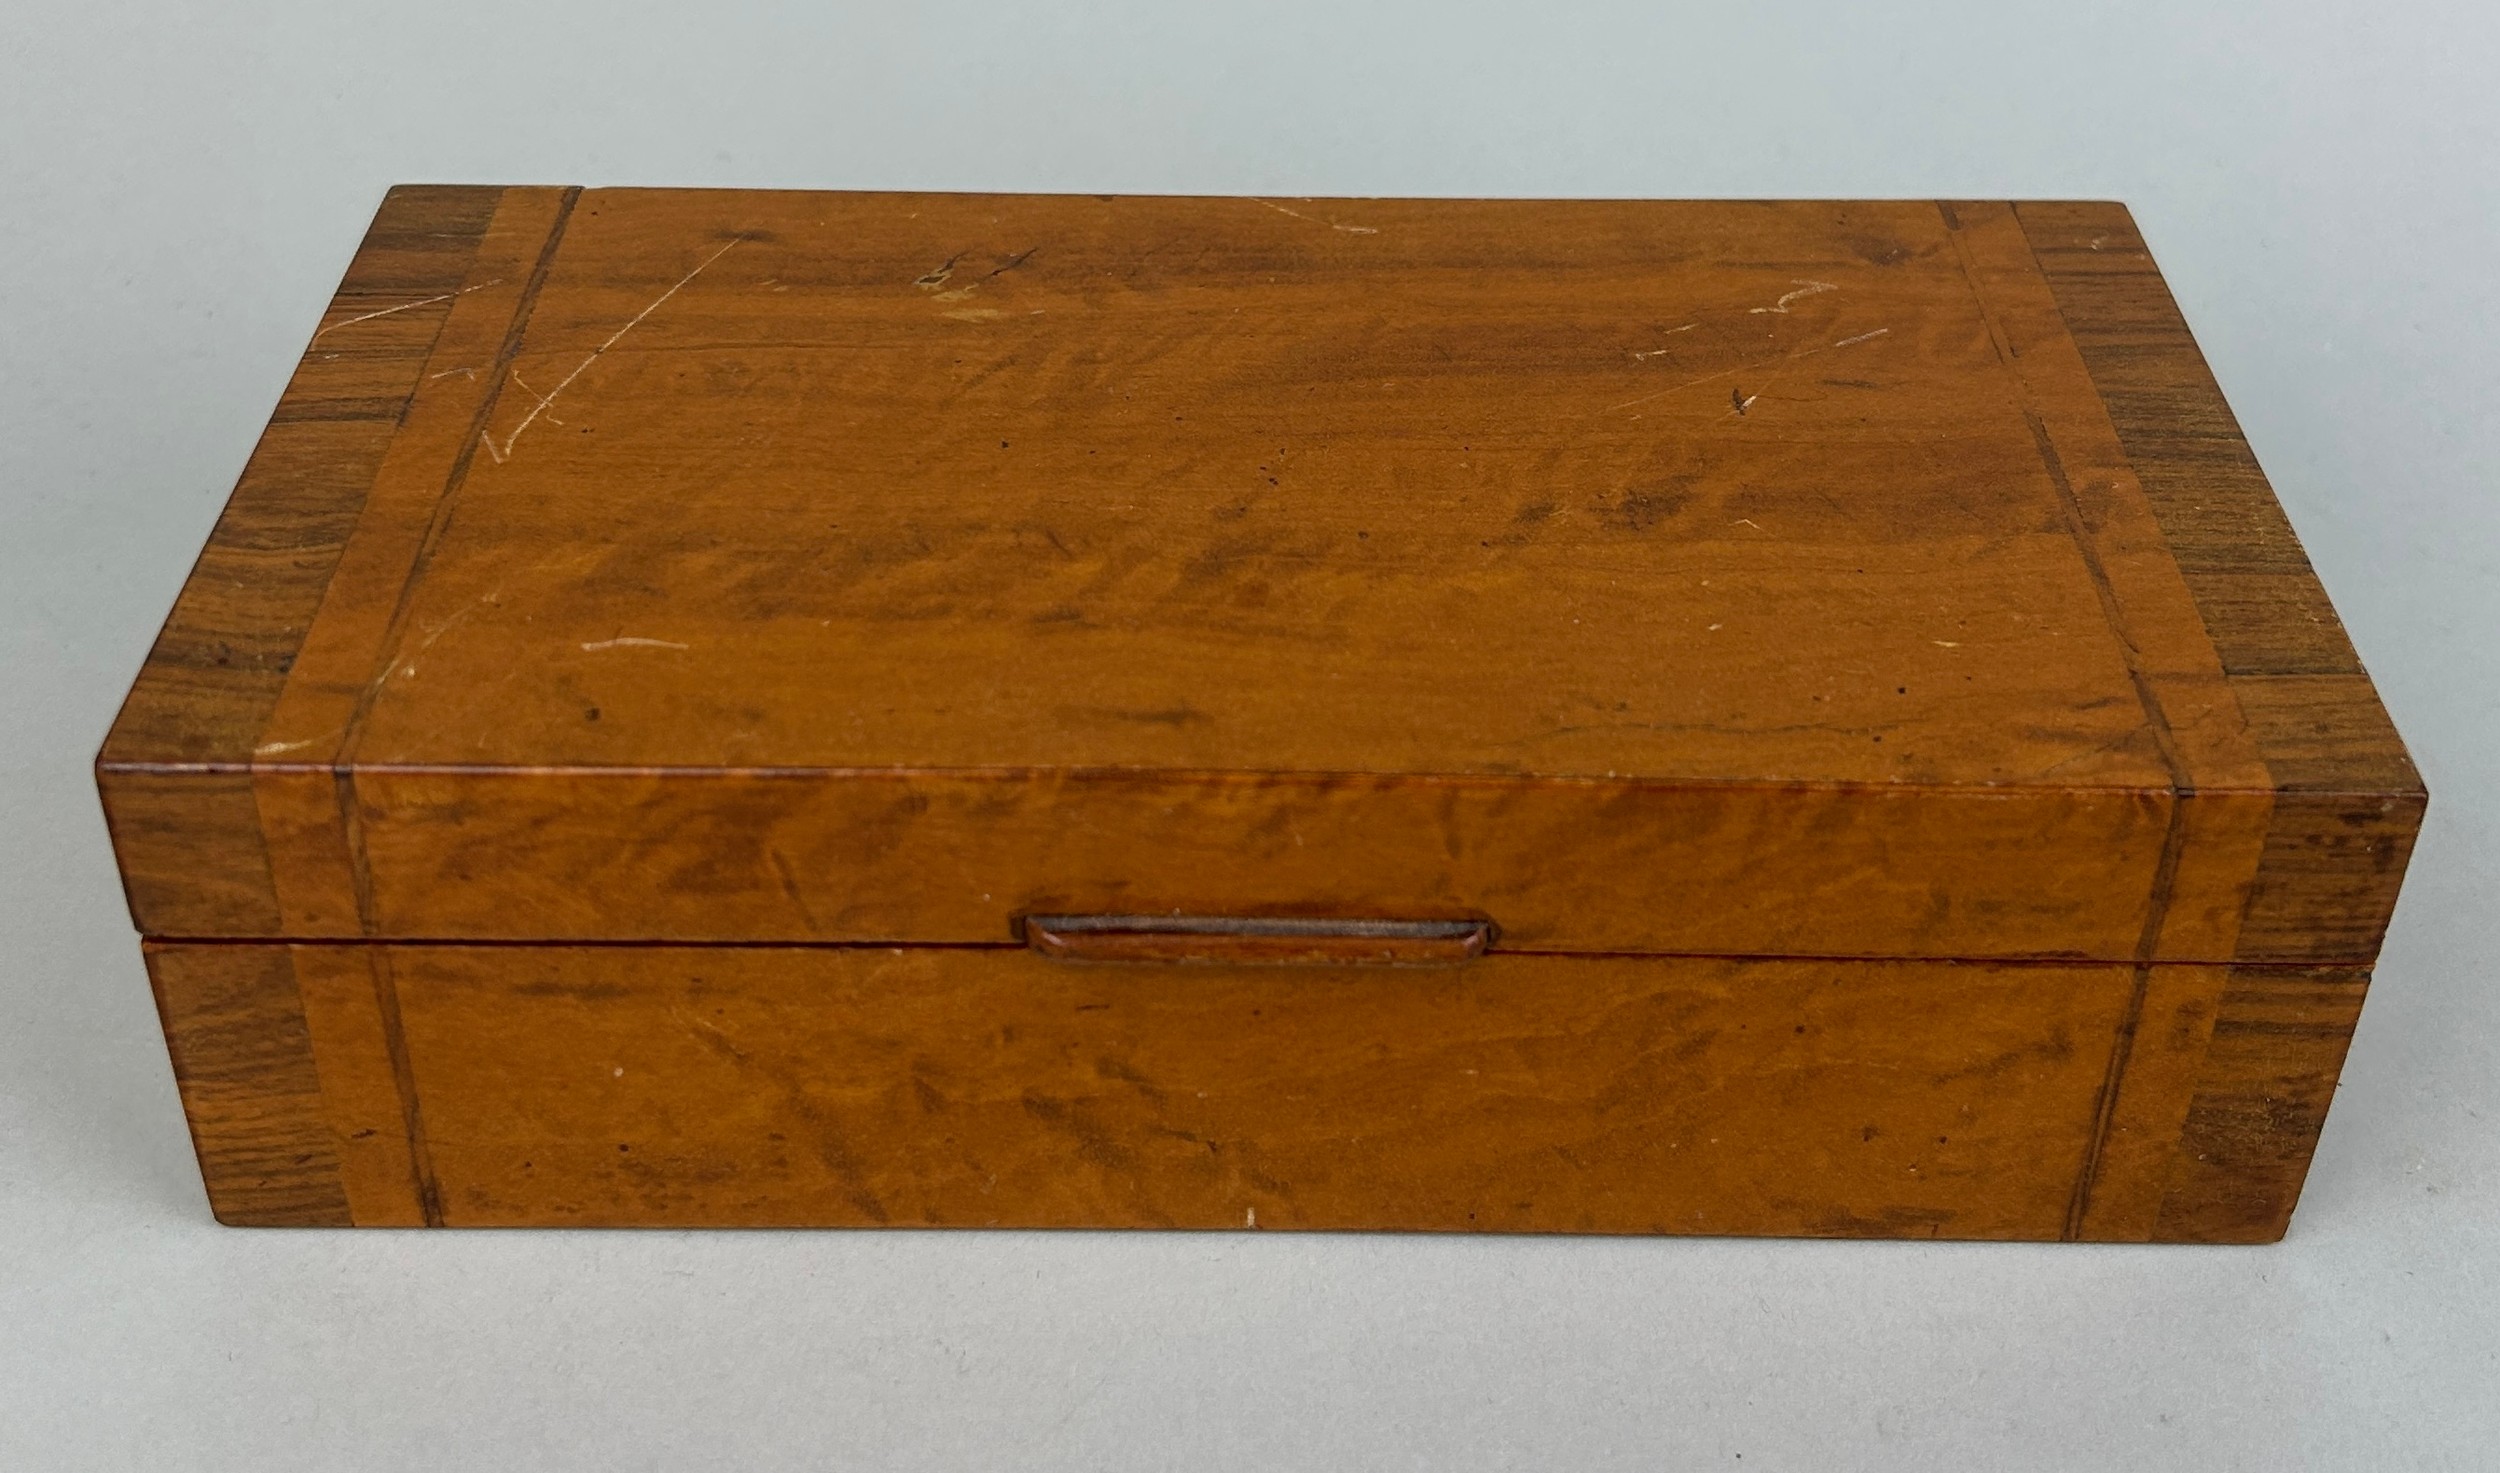 A SATINWOOD AND KINGWOOD VENEERED CEDARWOOD BOX